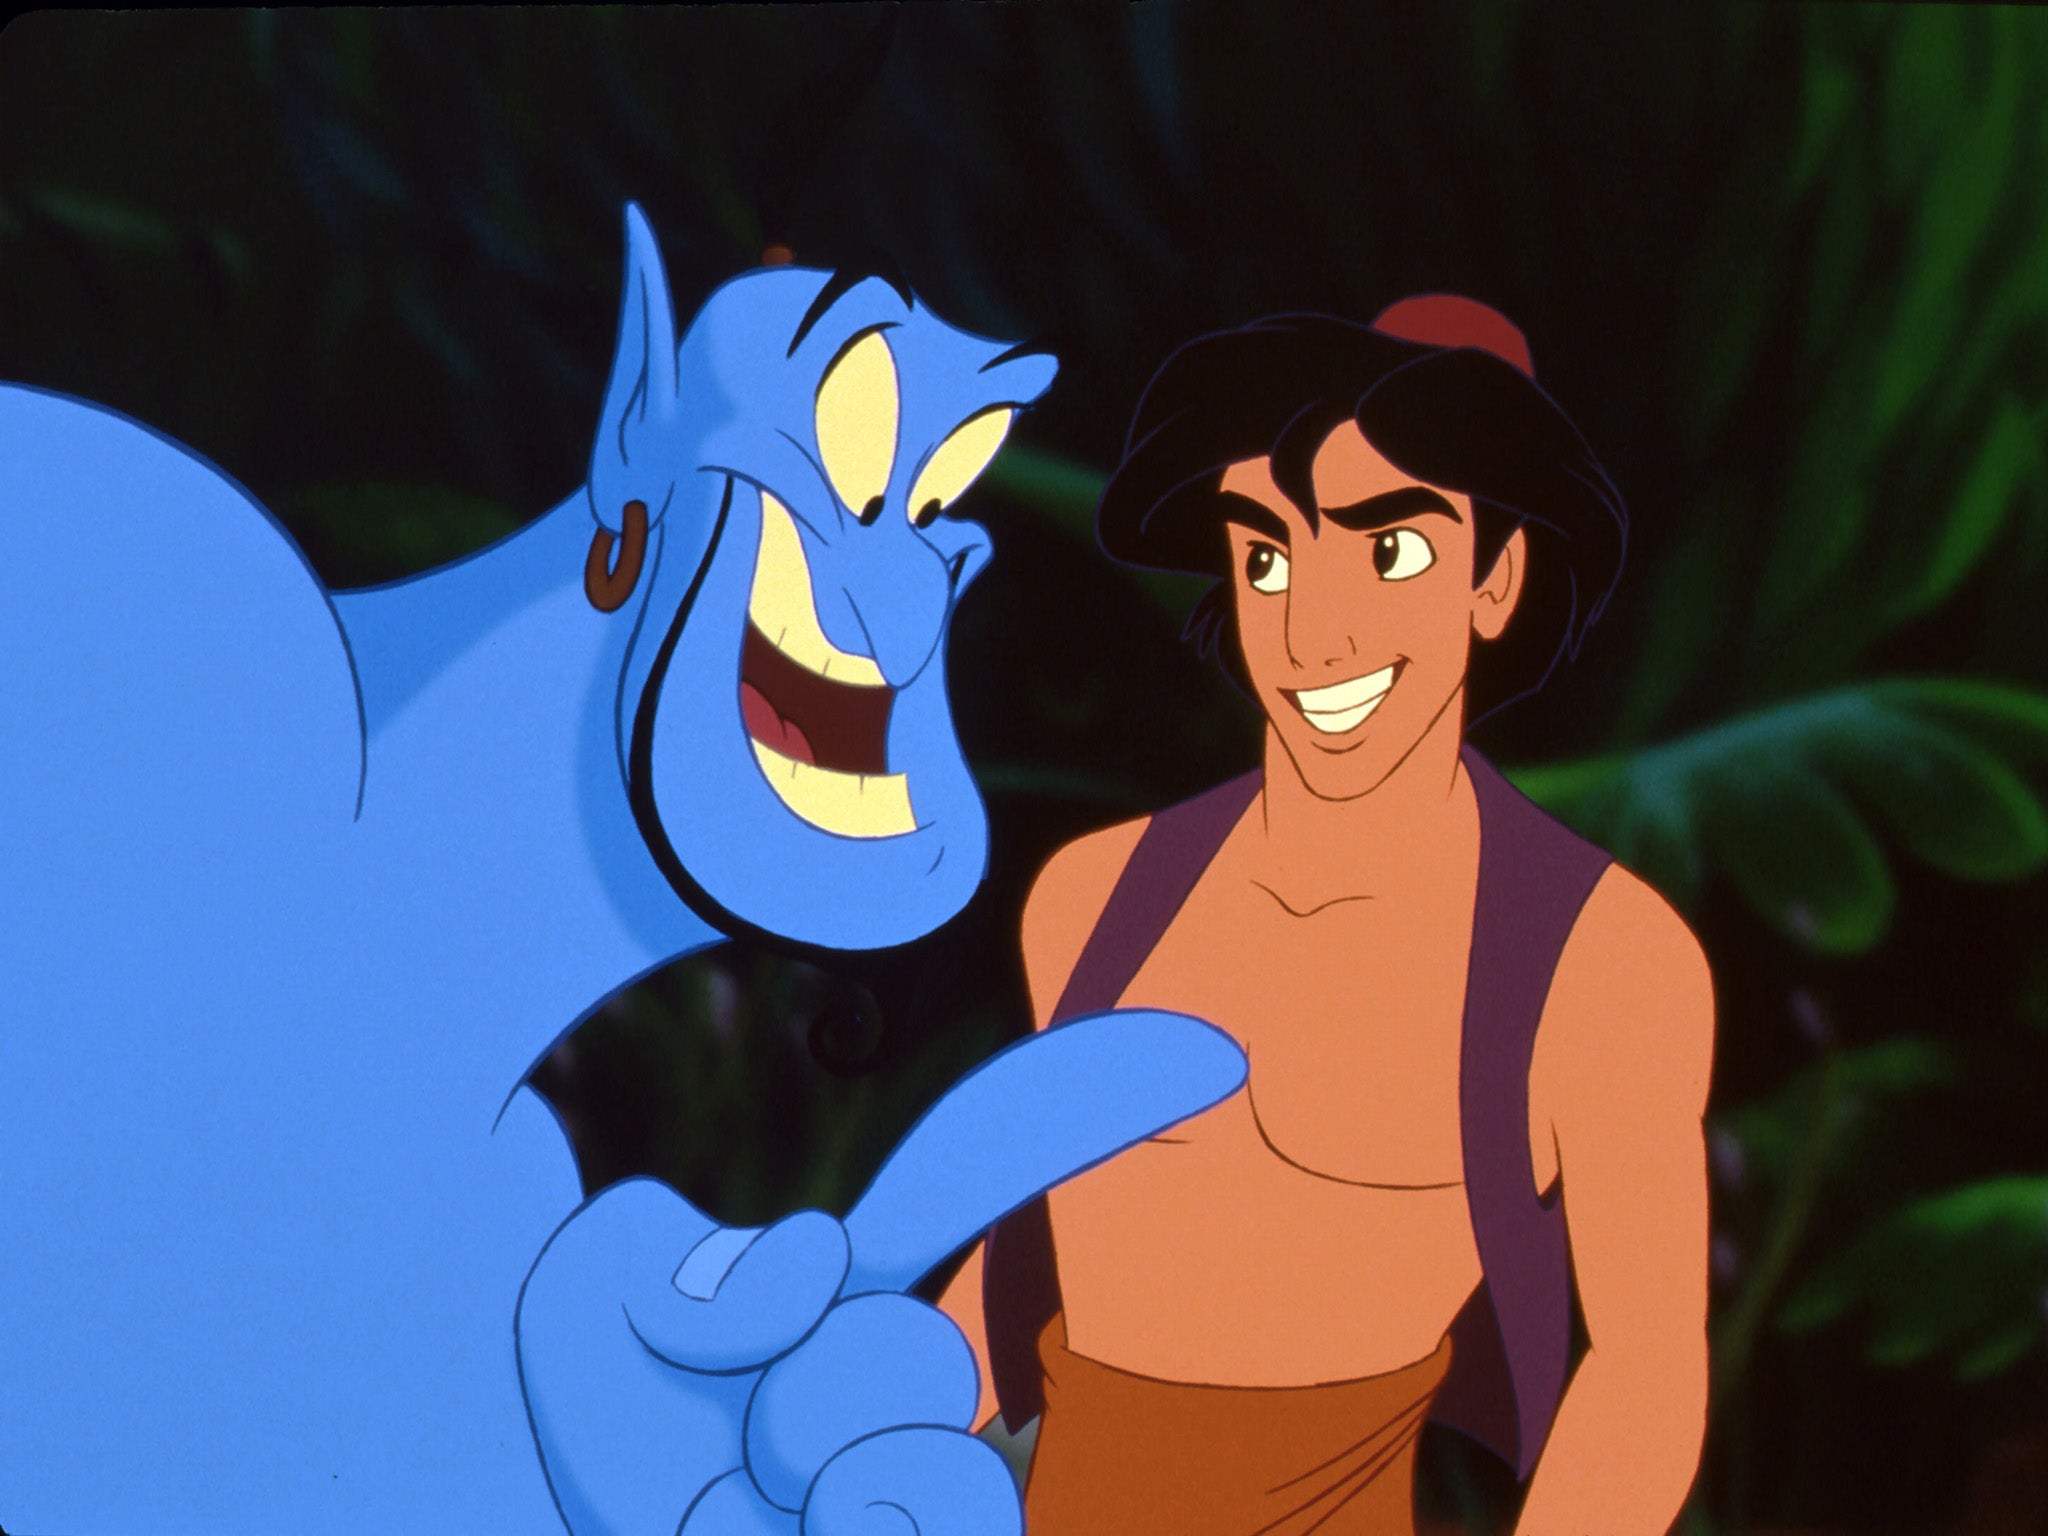 Robin Williams (left) as the Genie in ‘Aladdin'